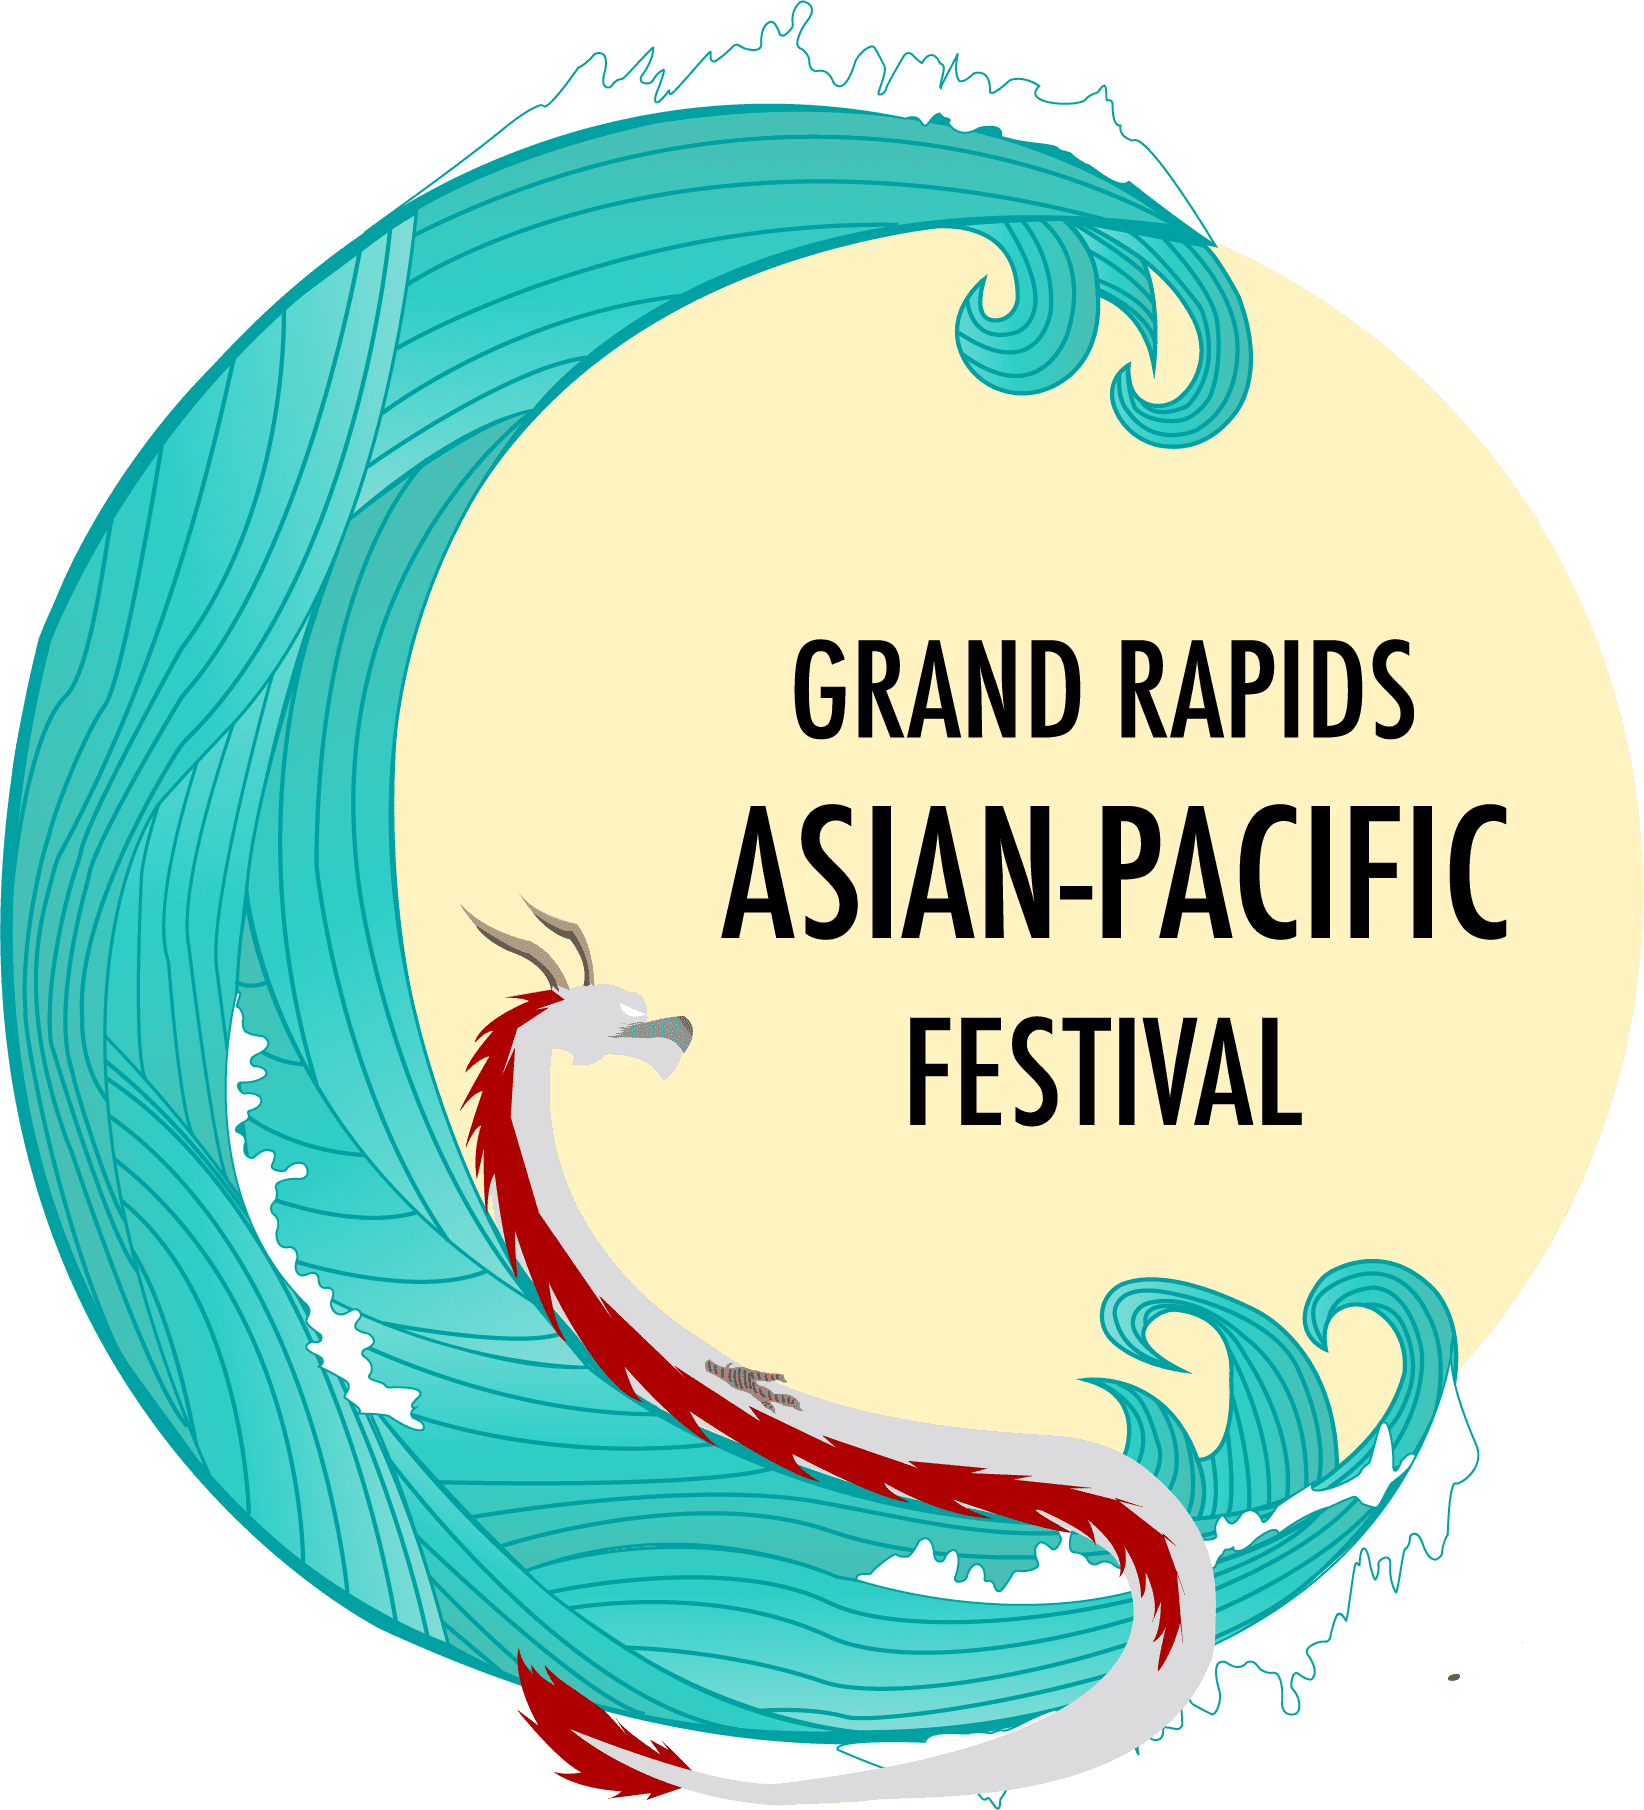 Grand Rapids Asian-Pacific Festival